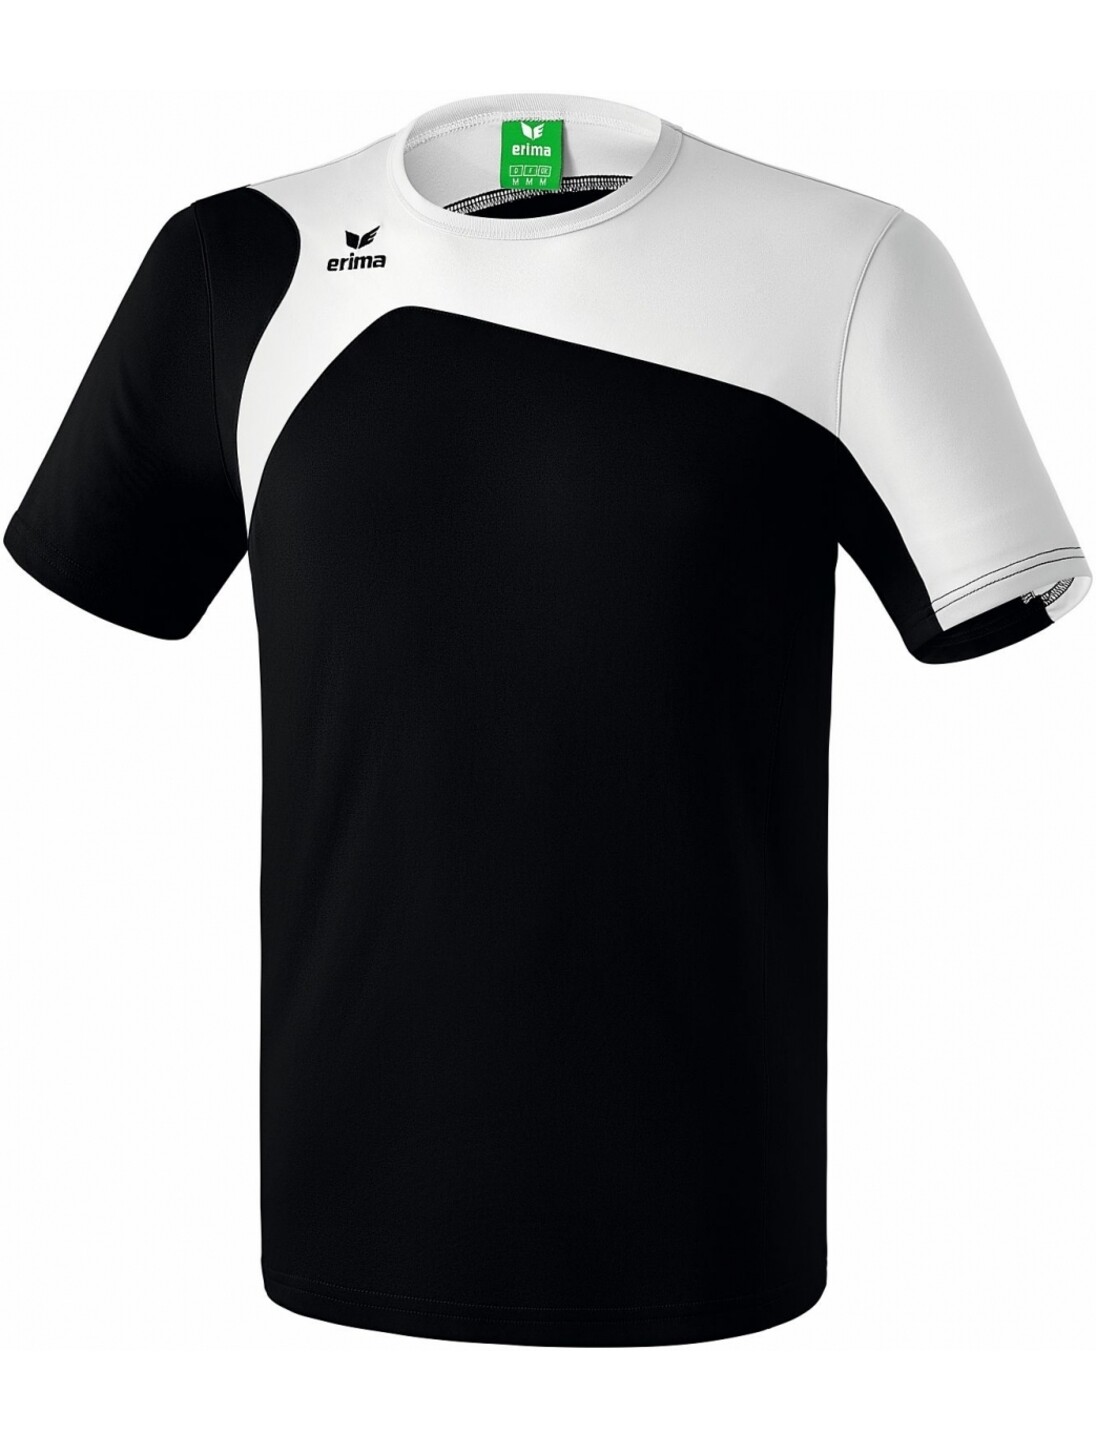 Herren Club 1900 2.0 T-Shirt CLUB 1900 2.0 schwarz/weiß ERIMA Kinder 